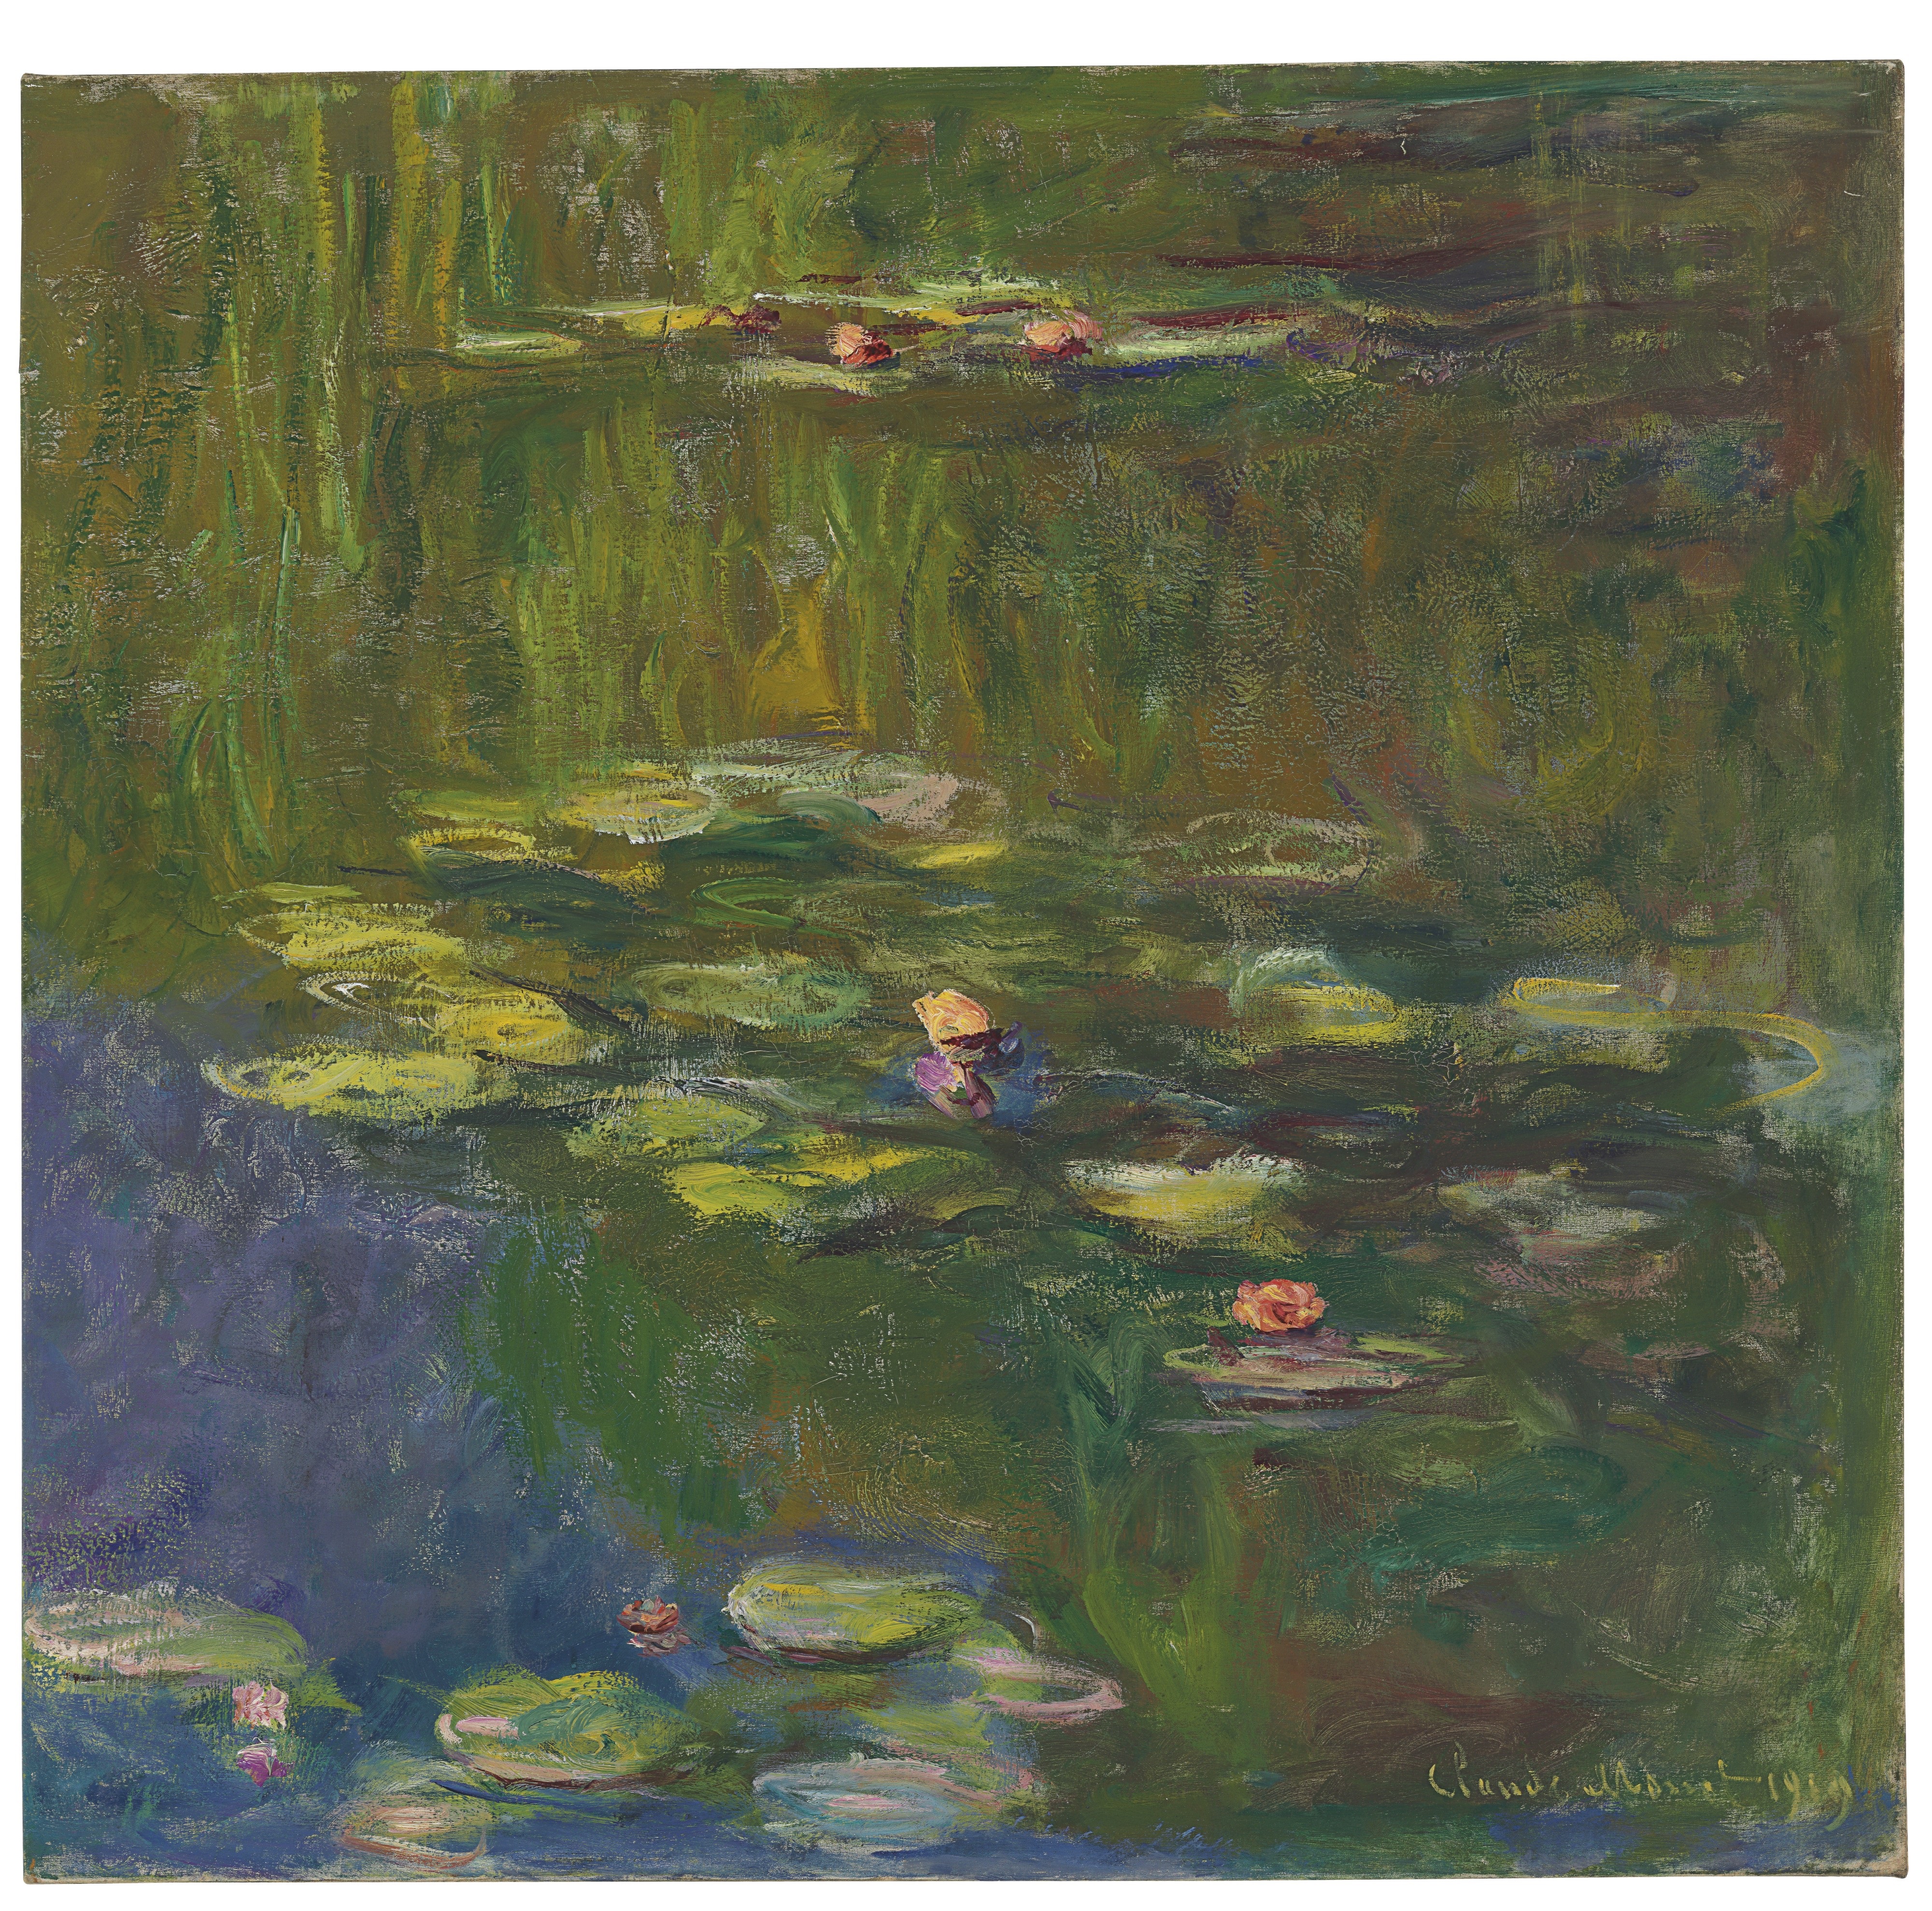 Monet's Le bassin aux nymphéas.